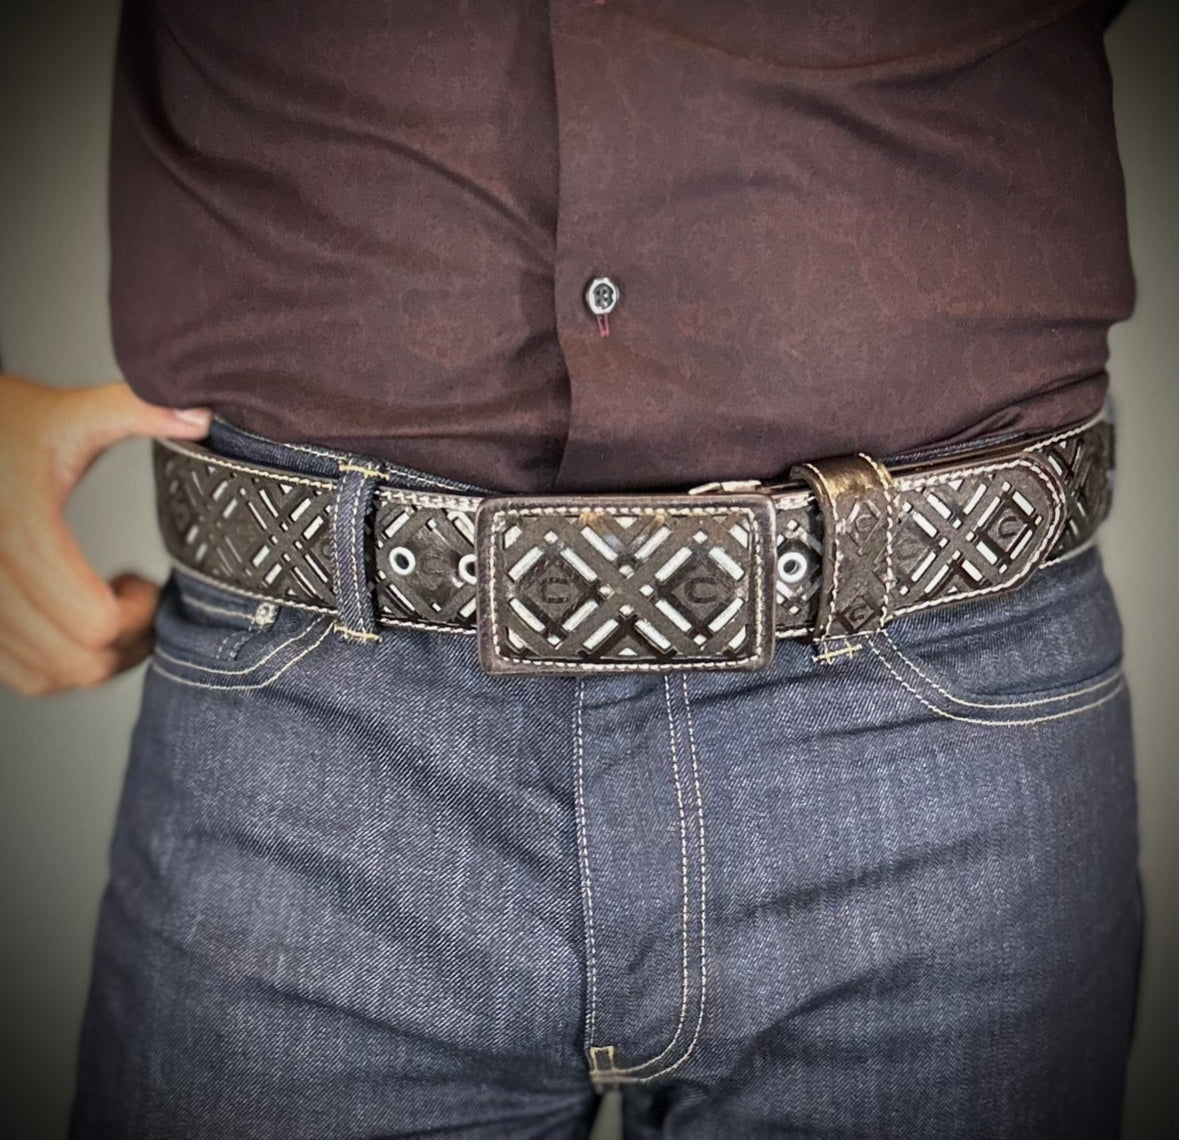 Mexican Cowboy Belt